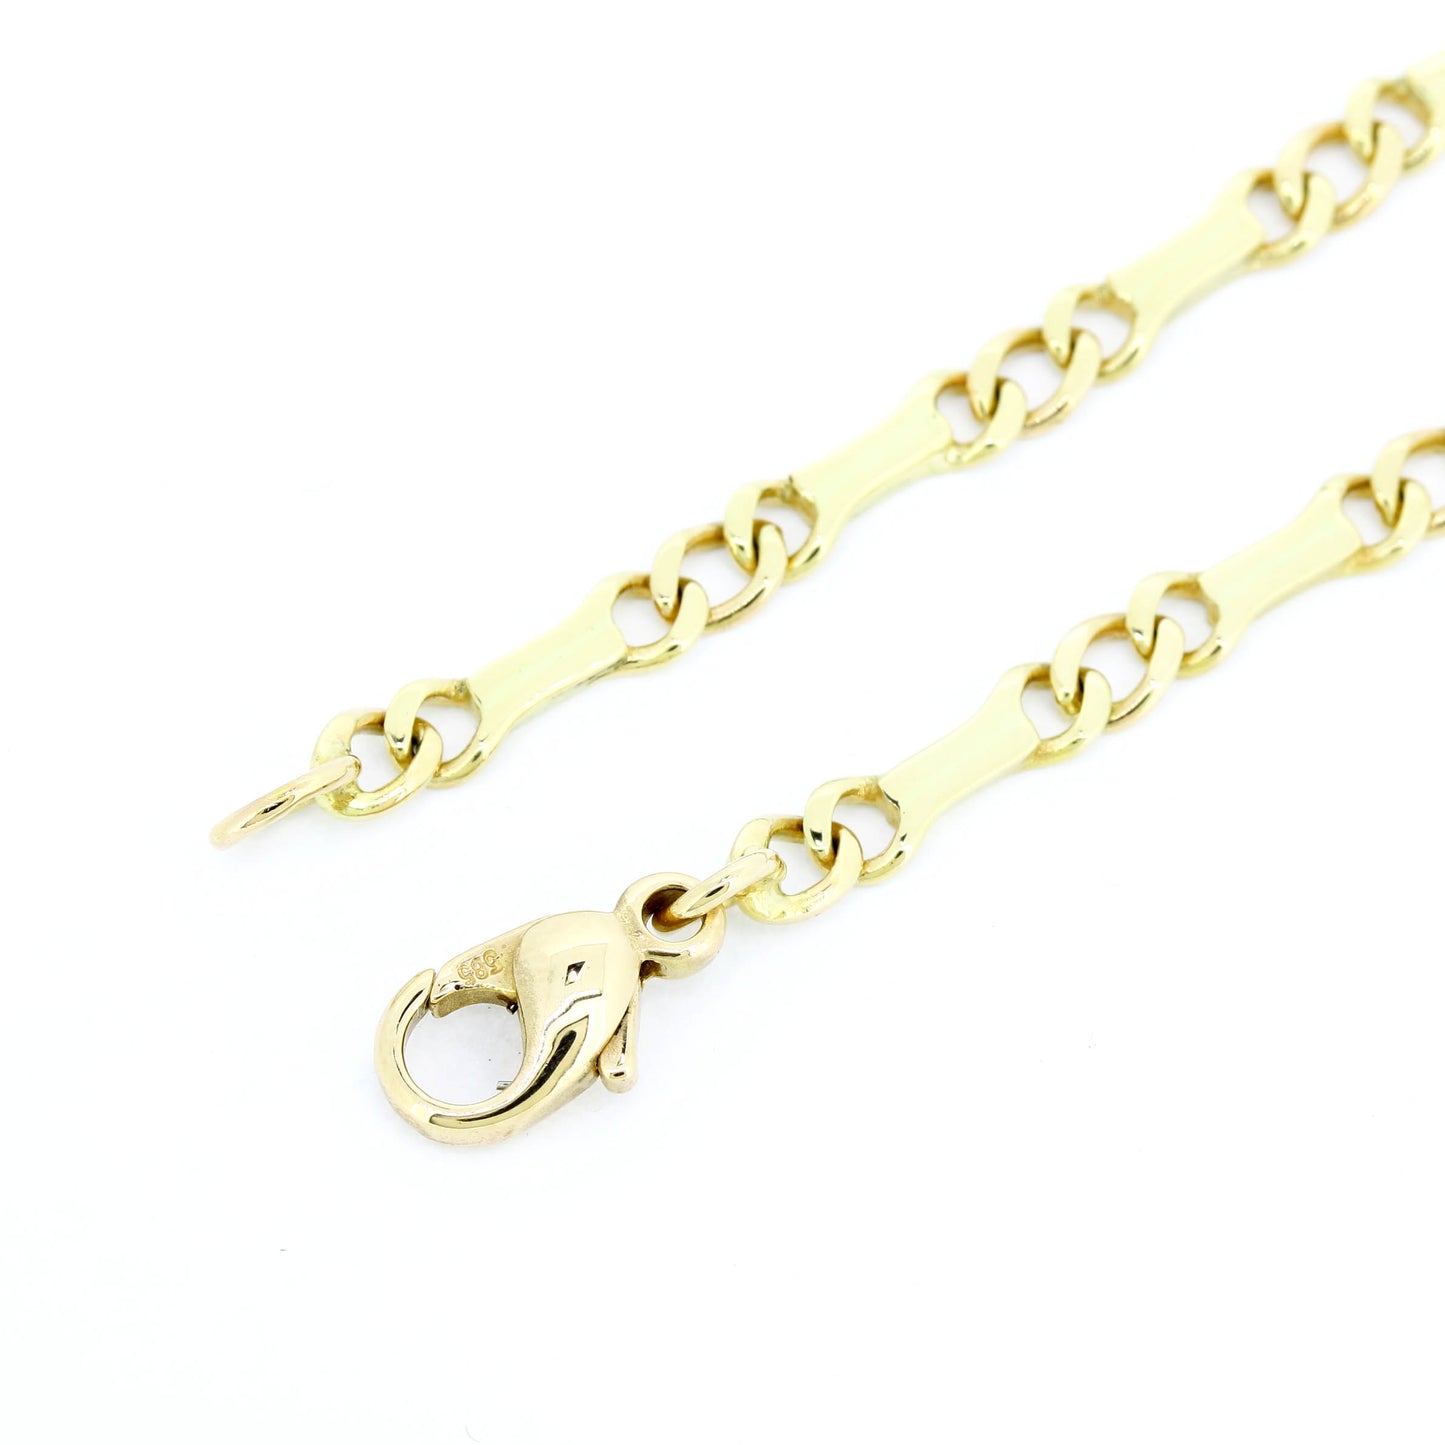 Platten Halskette 585 Gold 14 Kt Gelbgold - Kettenlänge 50 cm - Wert 2100,-